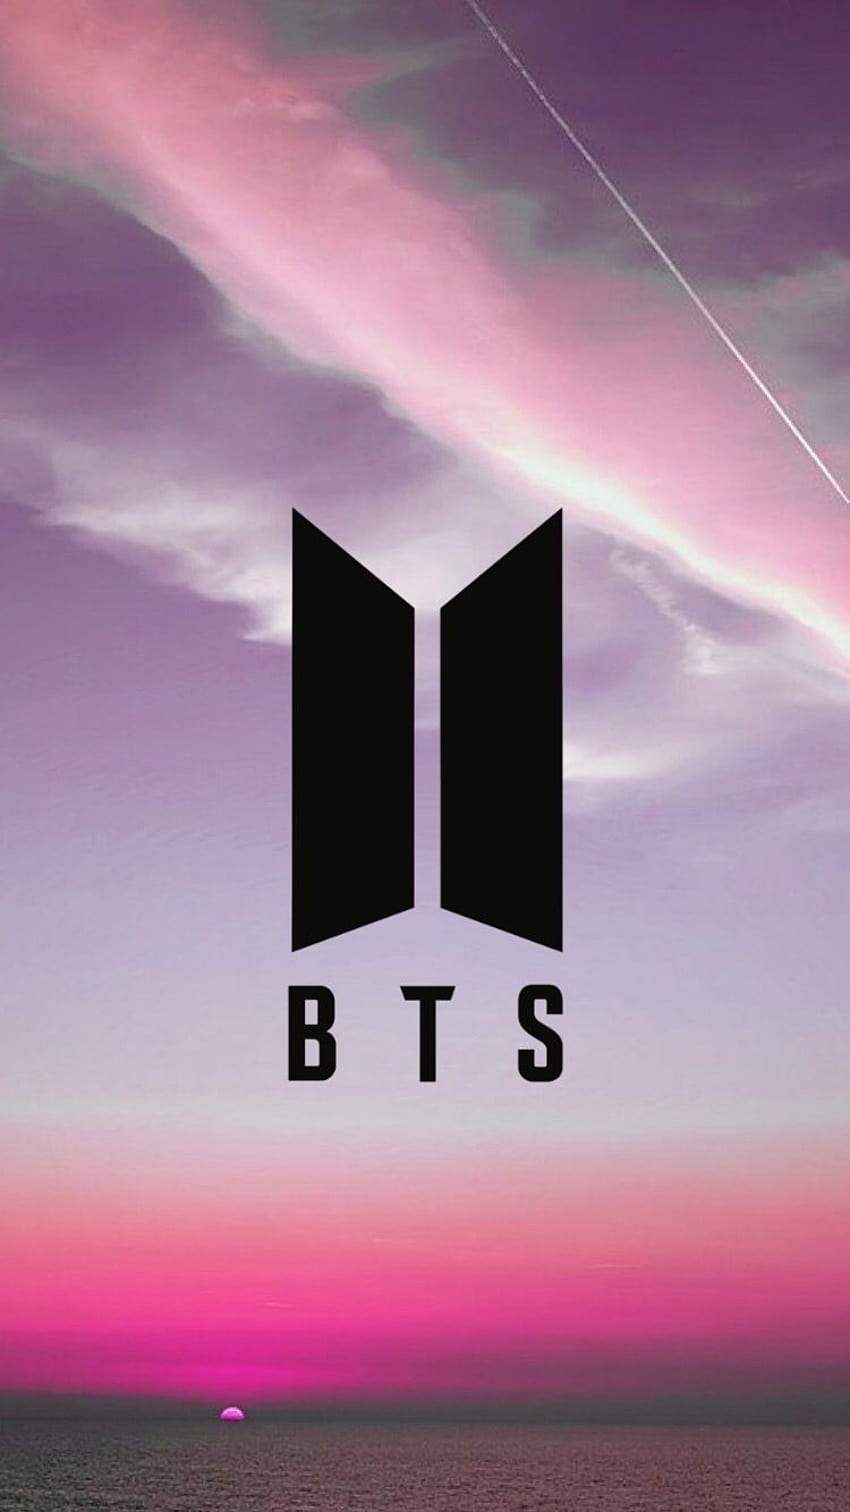 BTS Logo PNG | Free Download BTS Logo Icon, Symbol - Free Transparent PNG  Logos